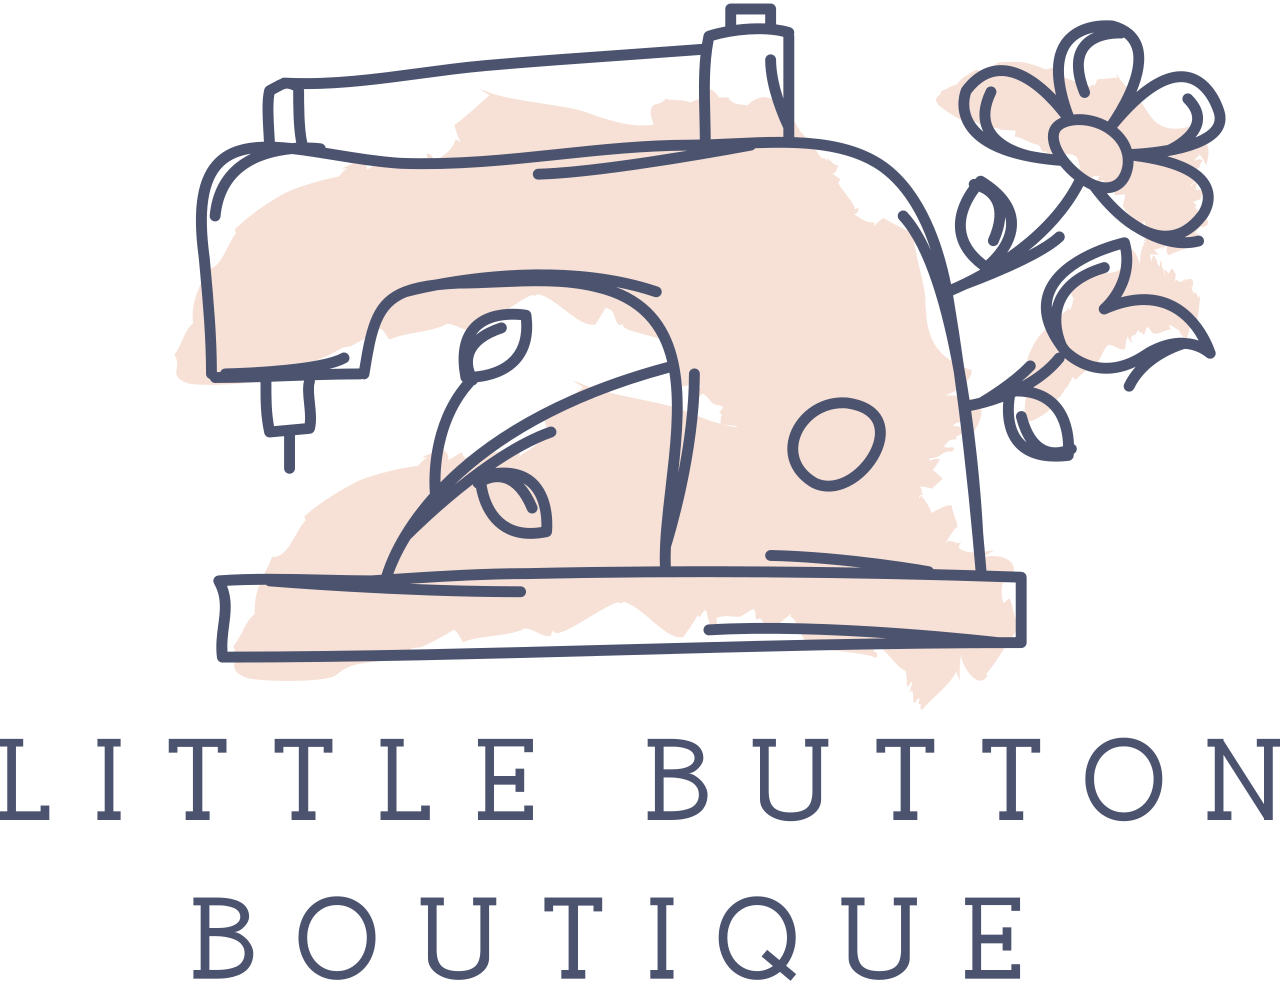 Little Button
Boutique 's logo